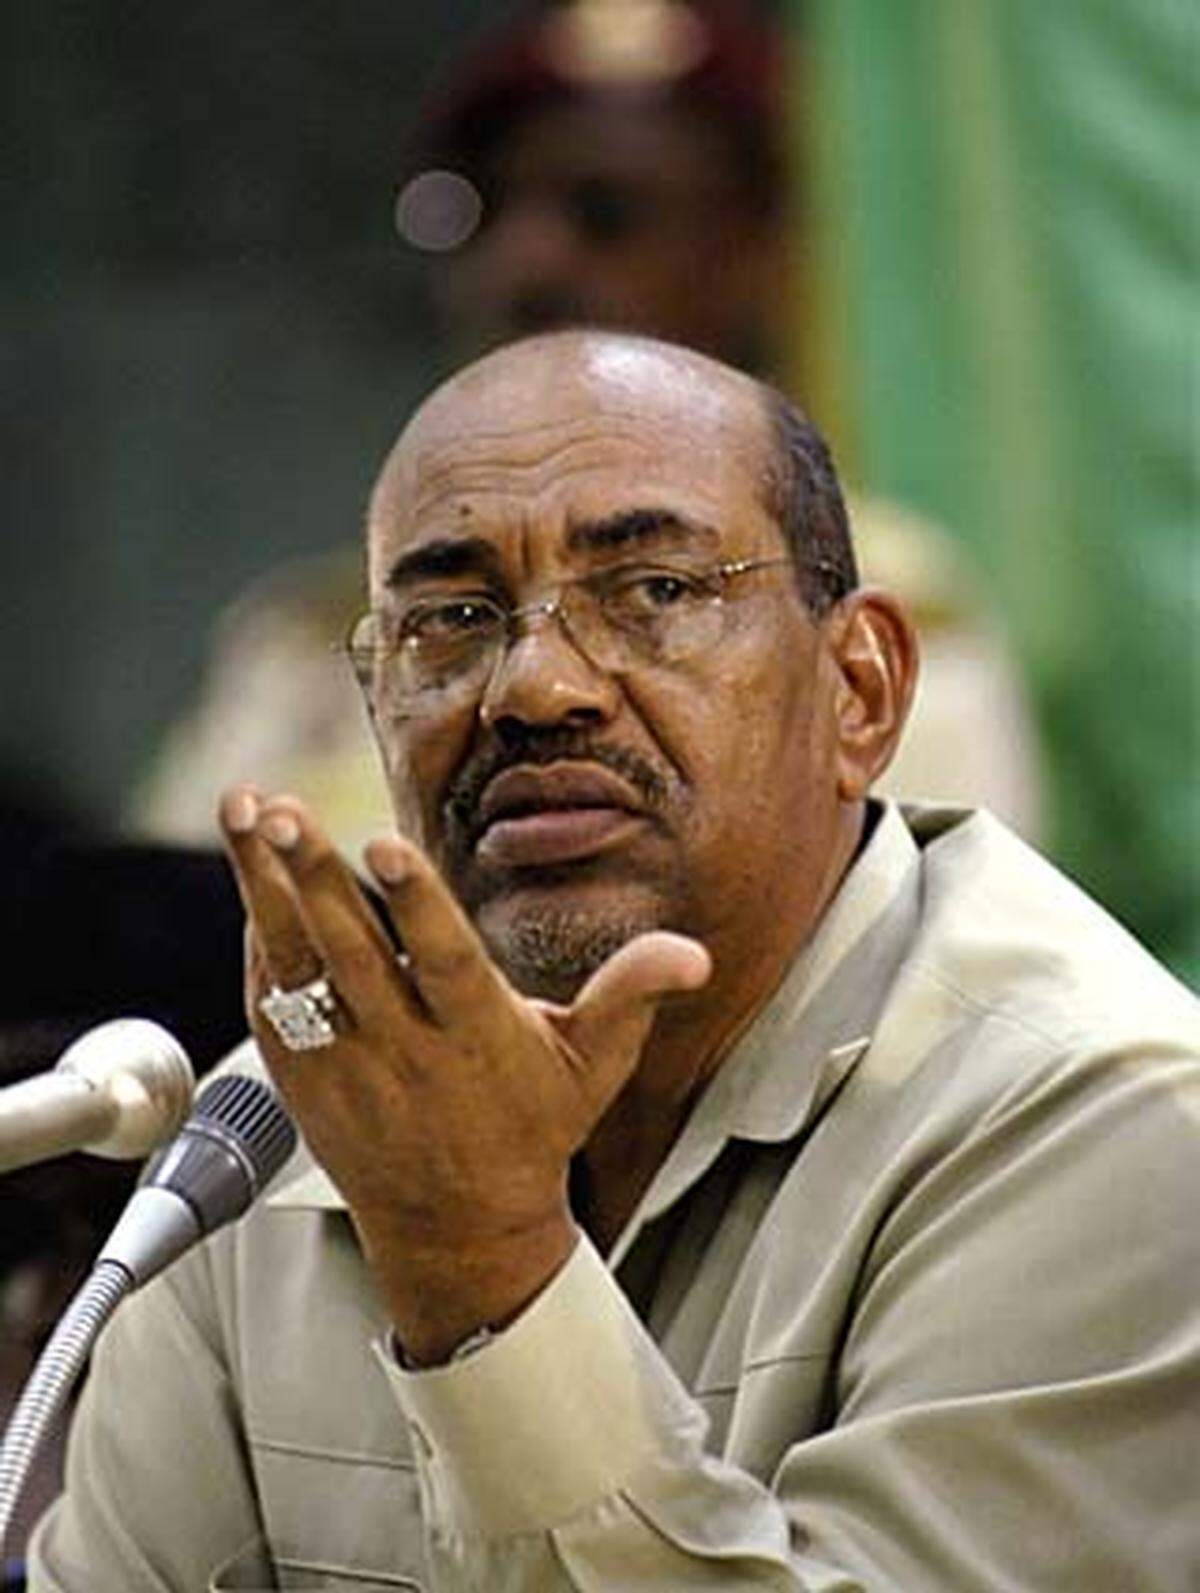 Al-Bashir - gewählter Präsident des Sudan - gilt als einer der schlimmsten Diktatoren der Gegenwart. Er gilt als Geheimniskrämer und widersrpüchliche Figur. Scharia-Gesetzgebung begleitet er mit Wirtschaftsliberalisierung. Für seinen Machterhalt wendet er, bisher äußerst erfolgreich, das Motto "Divide et Impera" an. Inter-ethnische Konflike erschüttern das Land, Bashir selbst sitzt fest im Sattel.  International ist er mehr als umstritten und relativ isoliert: Der Internationale Gerichtshof hat im Juli einen Haftbefehl gegen al-Bashir beantragt - den ersten gegen einen amtierenden Staatschef.